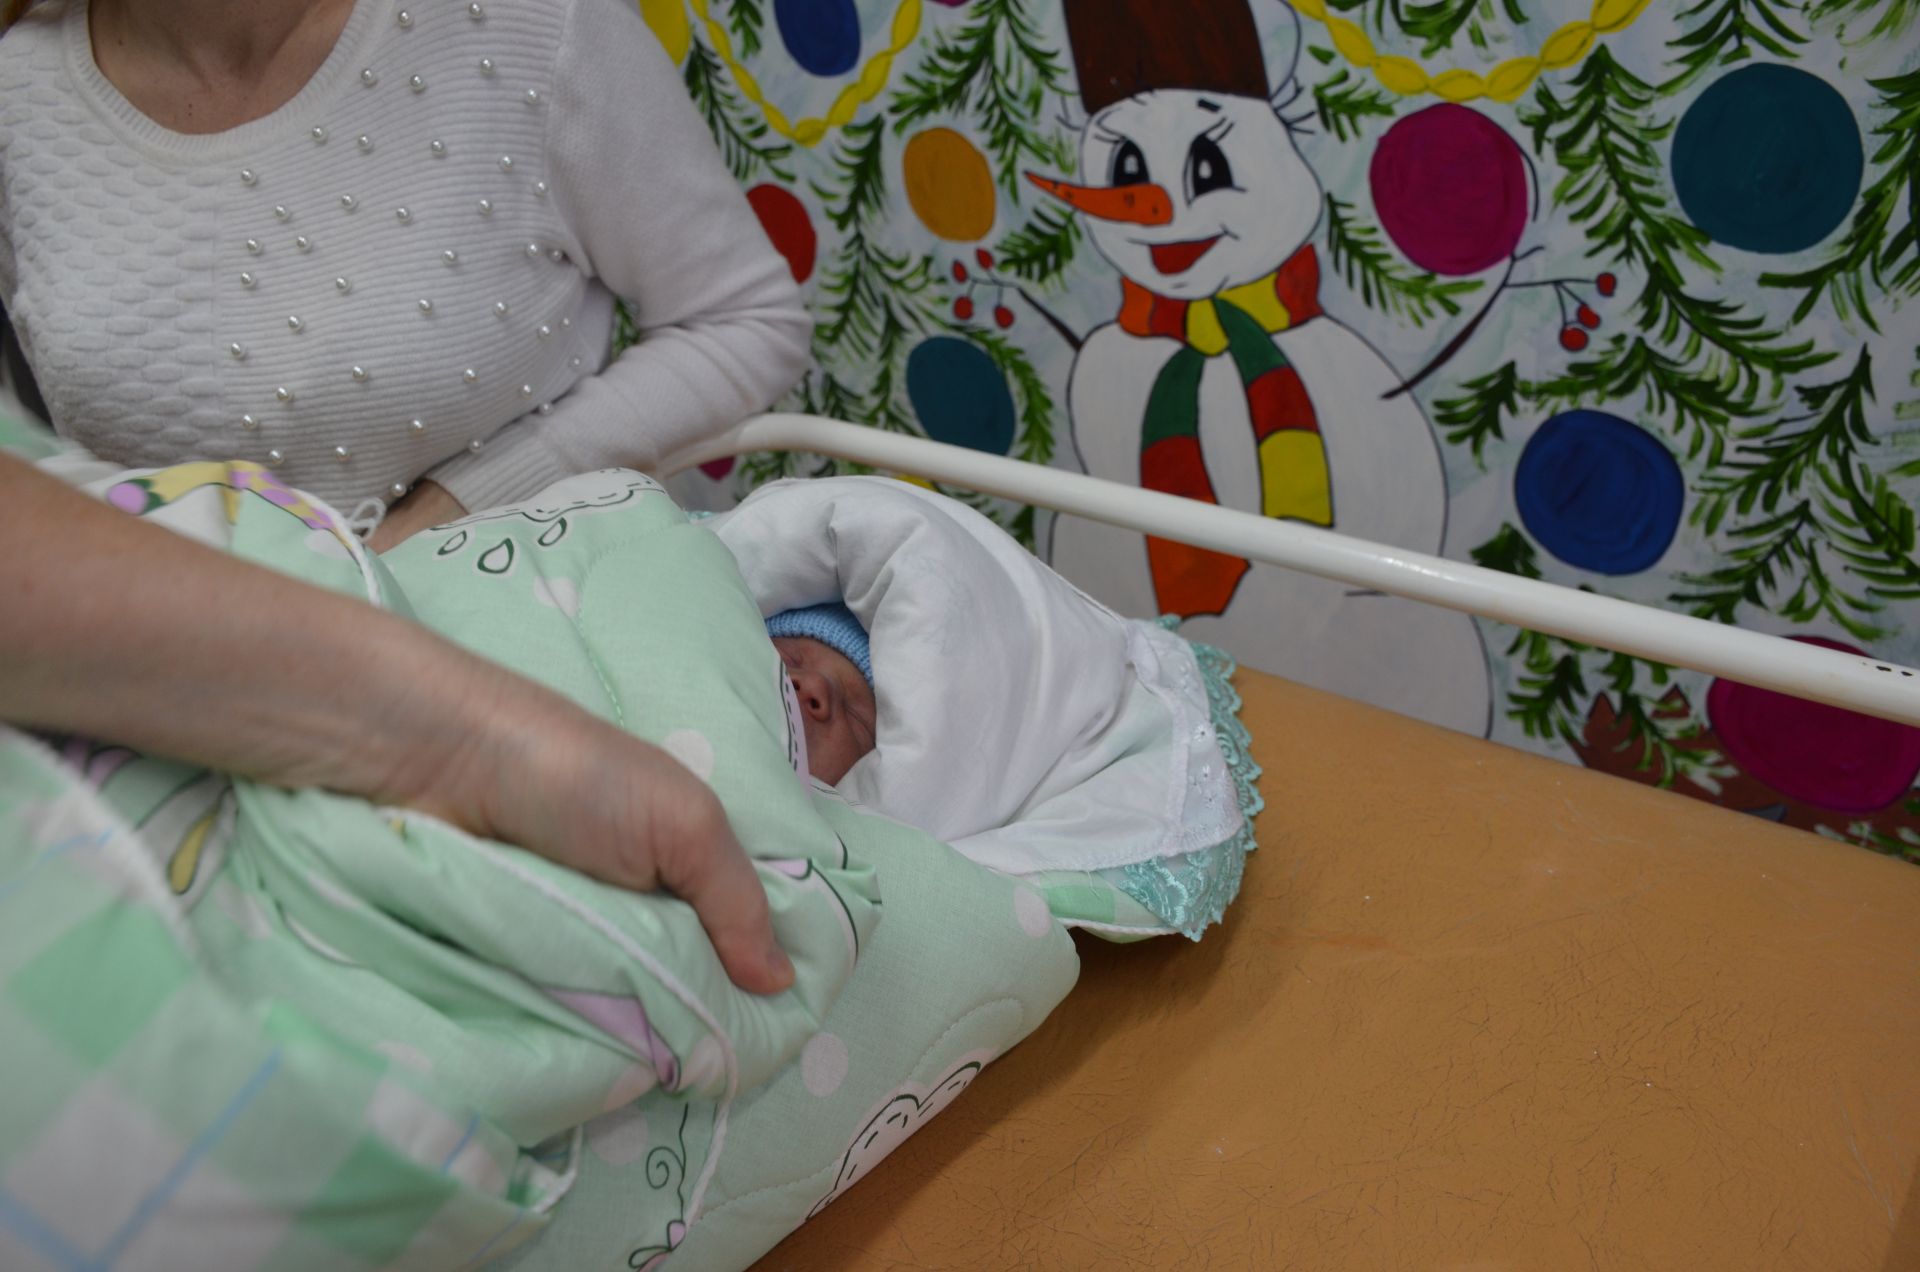 Жительнице Агрызского района вручили коробку новорожденного по нацпроекту "Демография"